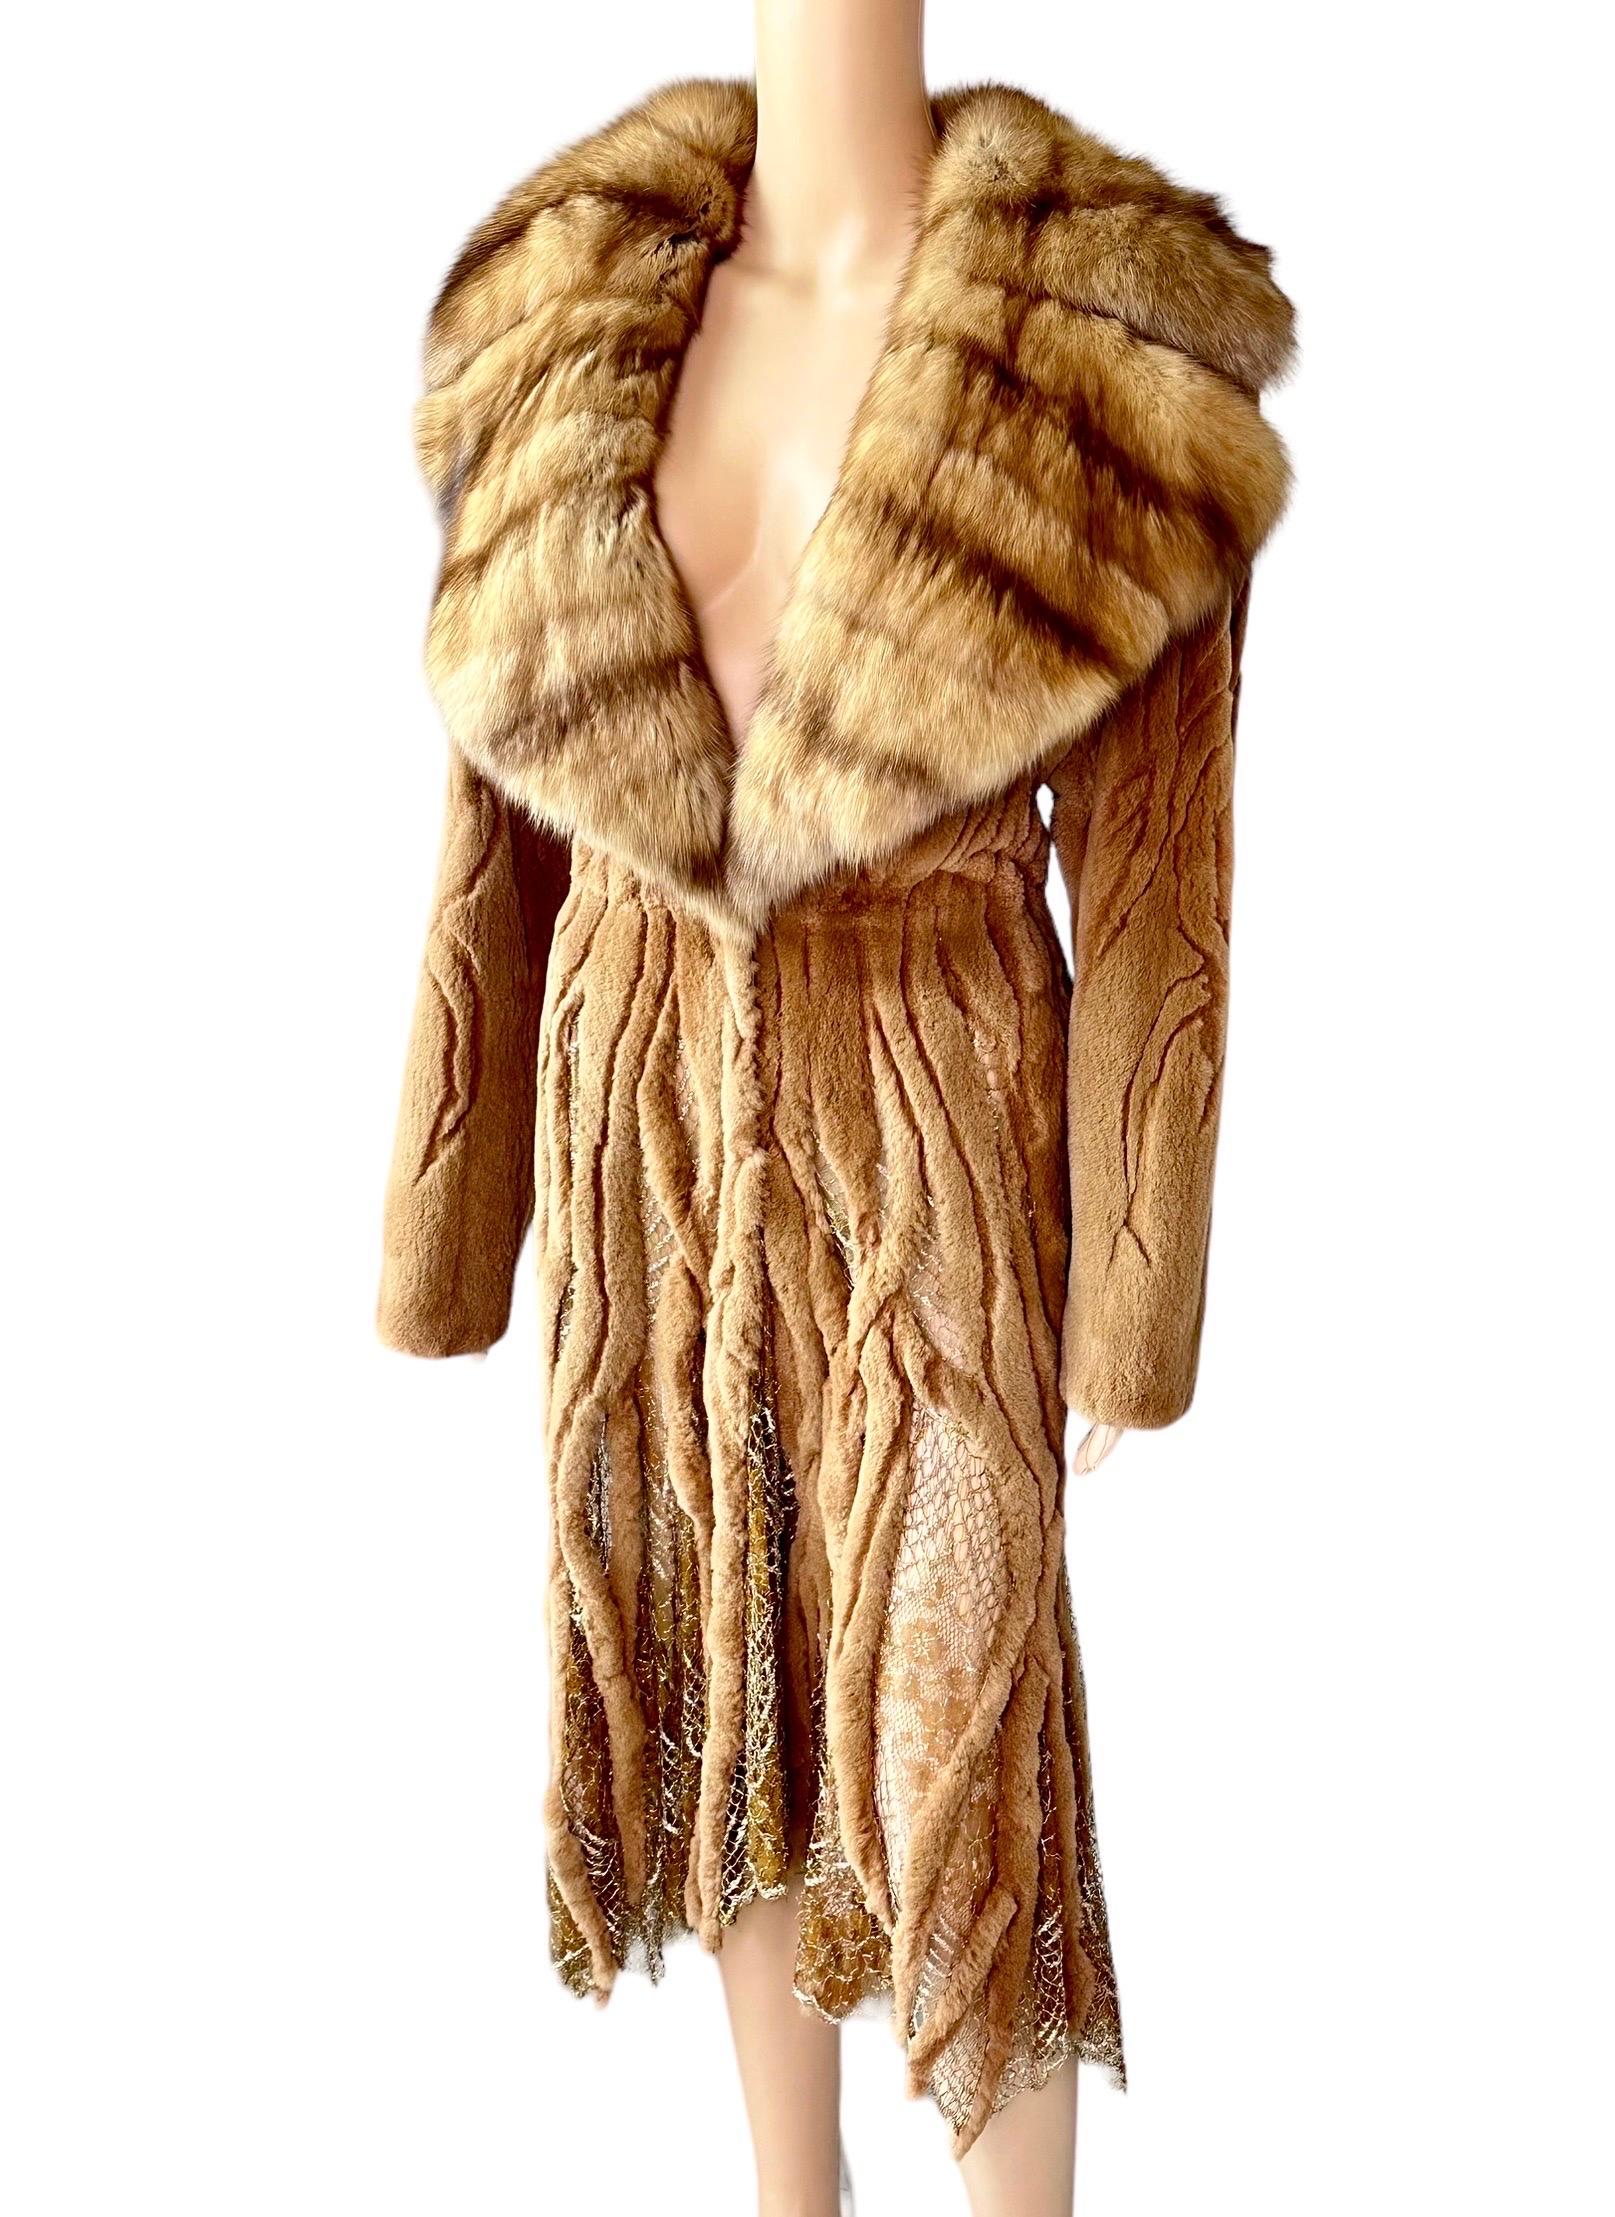 Atelier Gianni Versace c.1996 Fur Cutout Sheer Lace Mesh Panels Jacket Coat For Sale 11